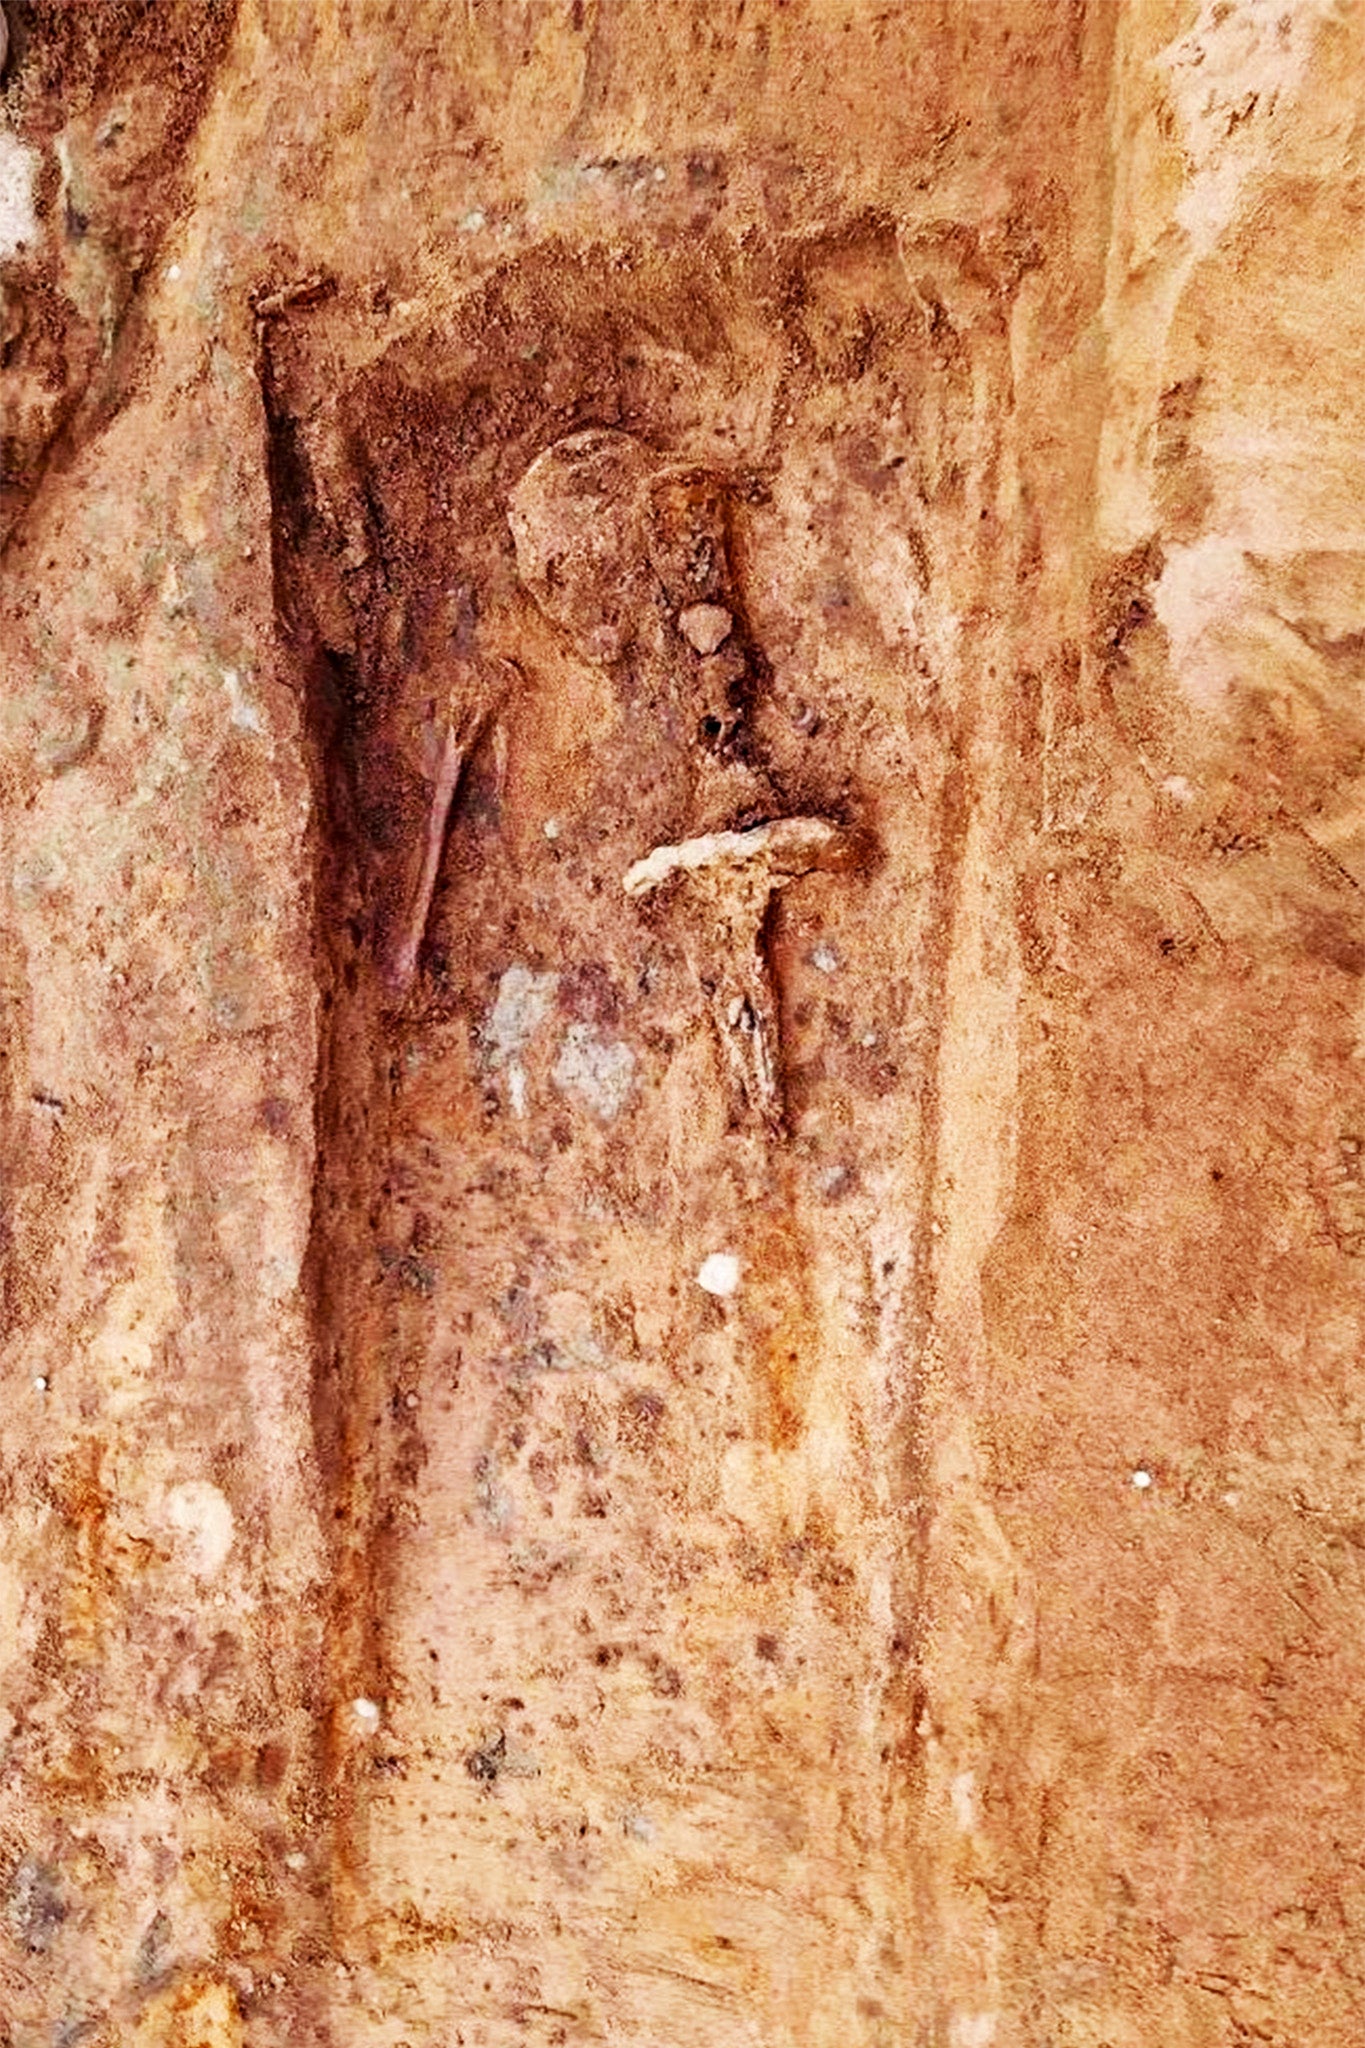 Foto de la tumba en la que se encontró la espada durante la excavación. Allí se puede observar un cráneo, la parte superior de uno de los brazos, y la espada ubicada sobre el lado izquierdo con su respectiva empuñadura.